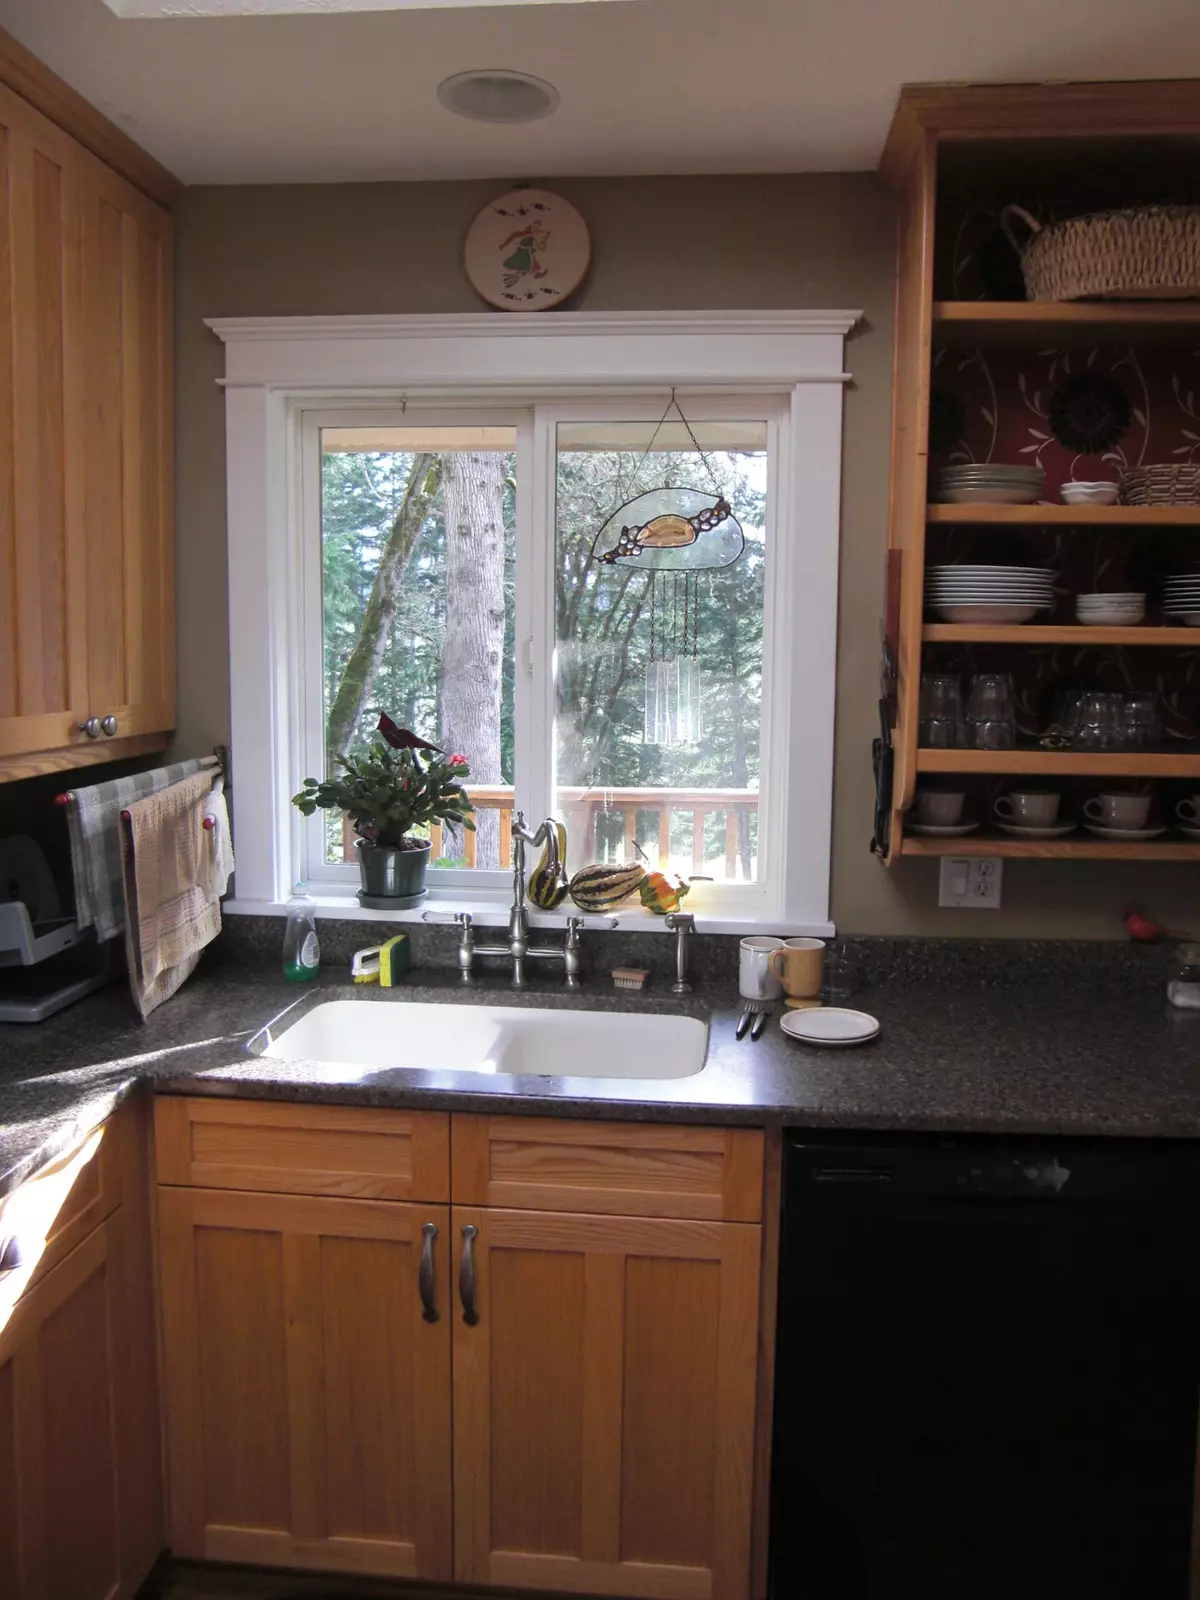 Խոհանոցում գտնվող խոհանոցում (38 լուսանկար). Ձմեռային կաբինետի սառնարան եւ պատուհանի տակ գտնվող տուփը խոհանոցում, դարակներ եւ ձեւավորման այլ տարբերակներ 20962_17